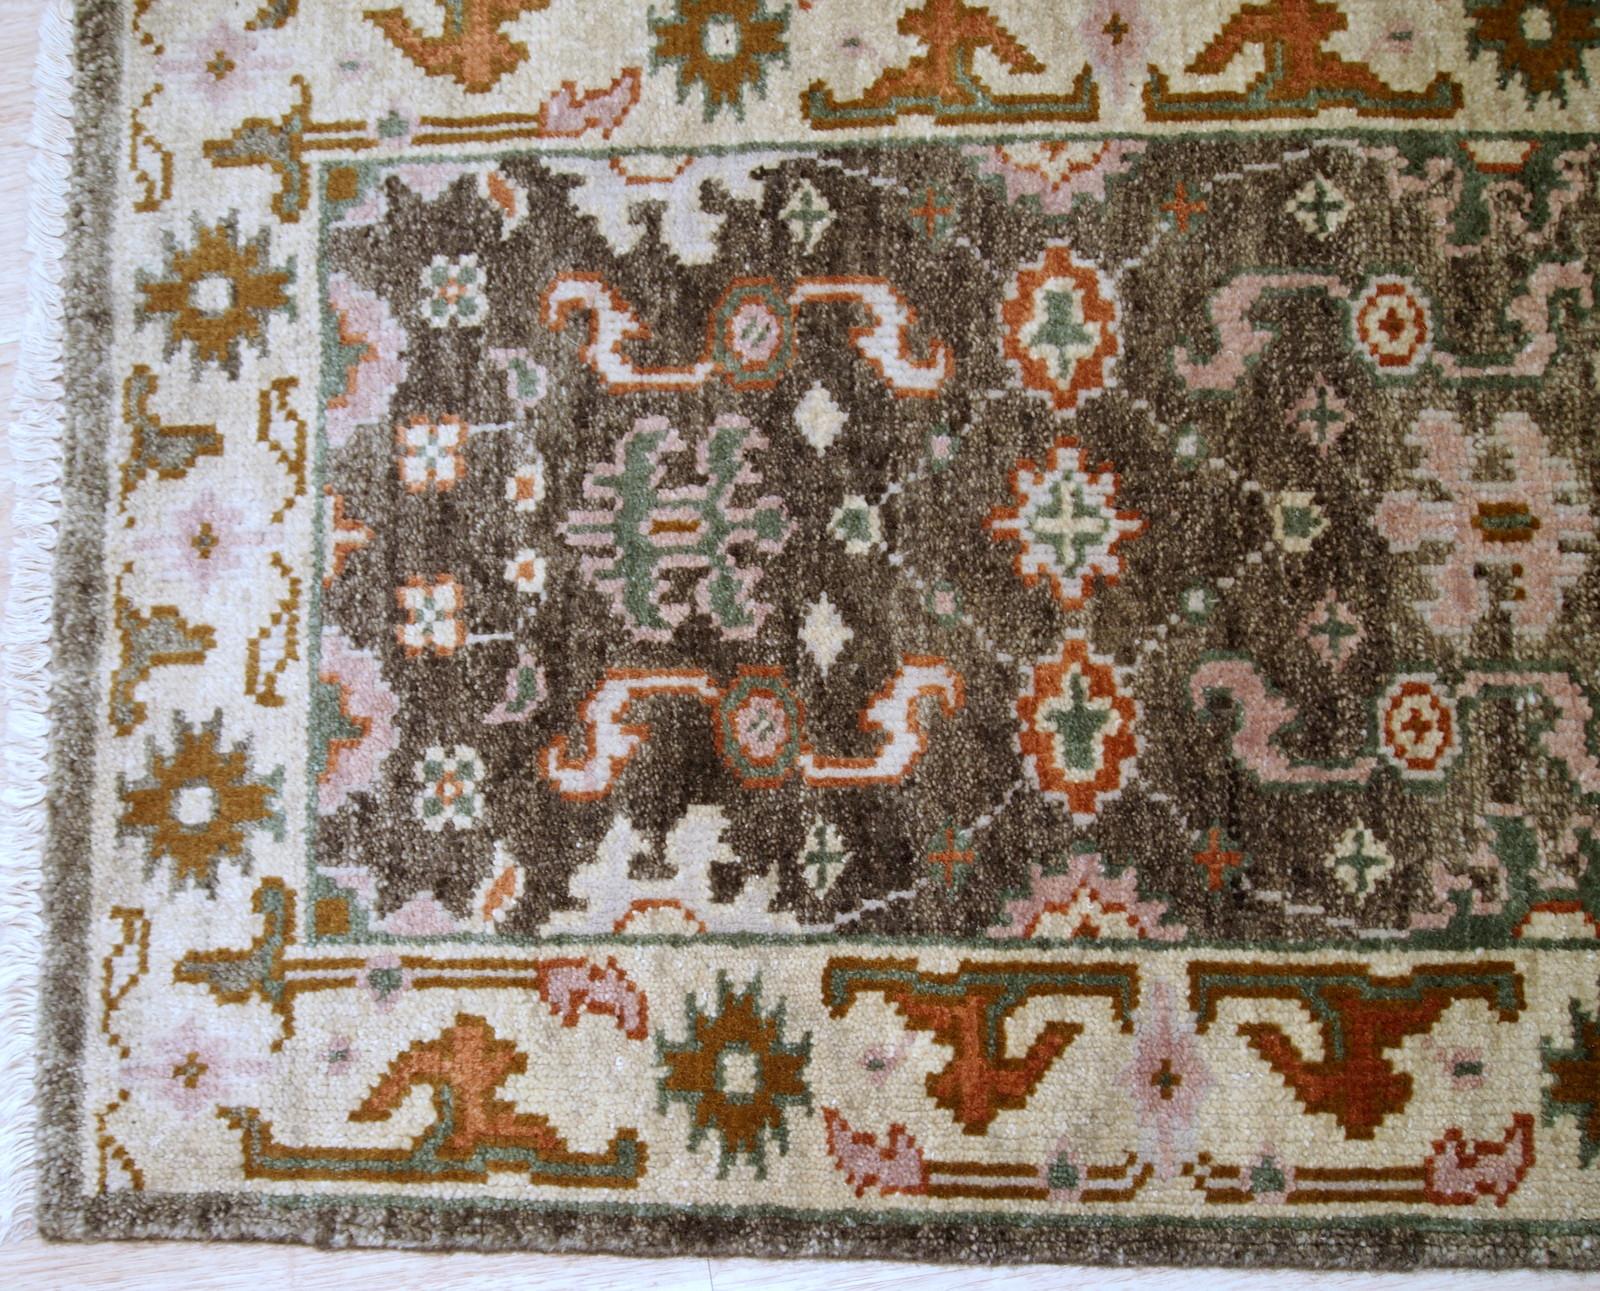 Handgefertigte alte Indo-Mahal-Matte aus Wolle. Der Teppich stammt aus dem Ende des 20. Jahrhunderts und ist in gutem Originalzustand.

- Zustand: Original gut,

- ca. 1980er Jahre,

- Größe: 2,1' x 3,2' (64 cm x 97 cm),

- Material: